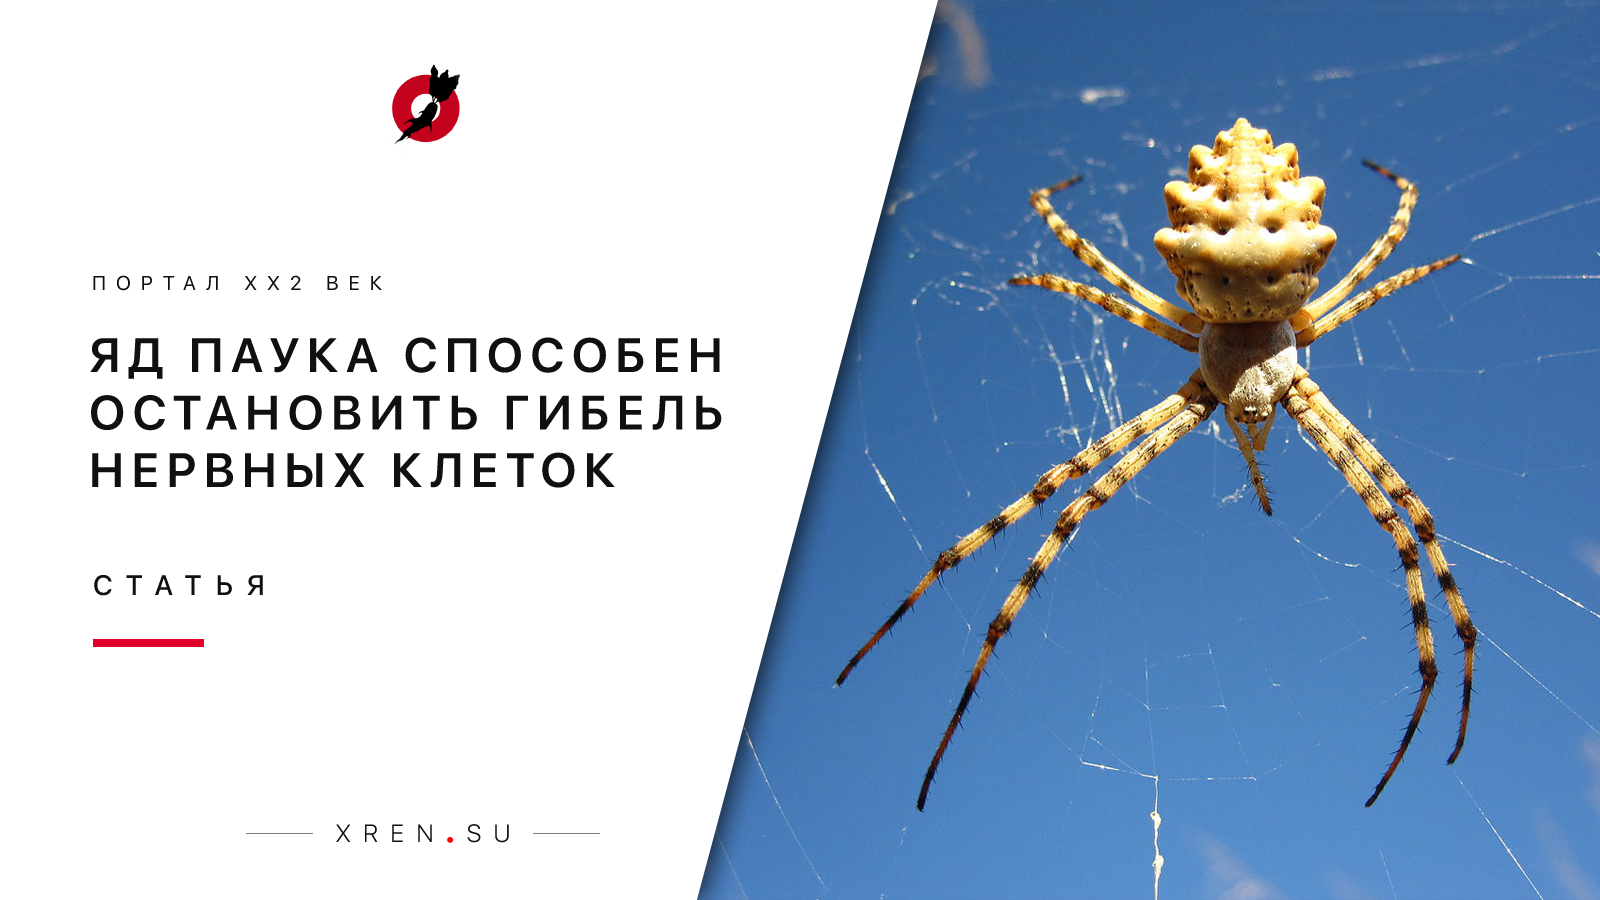 Яд паука способен остановить гибель нервных клеток